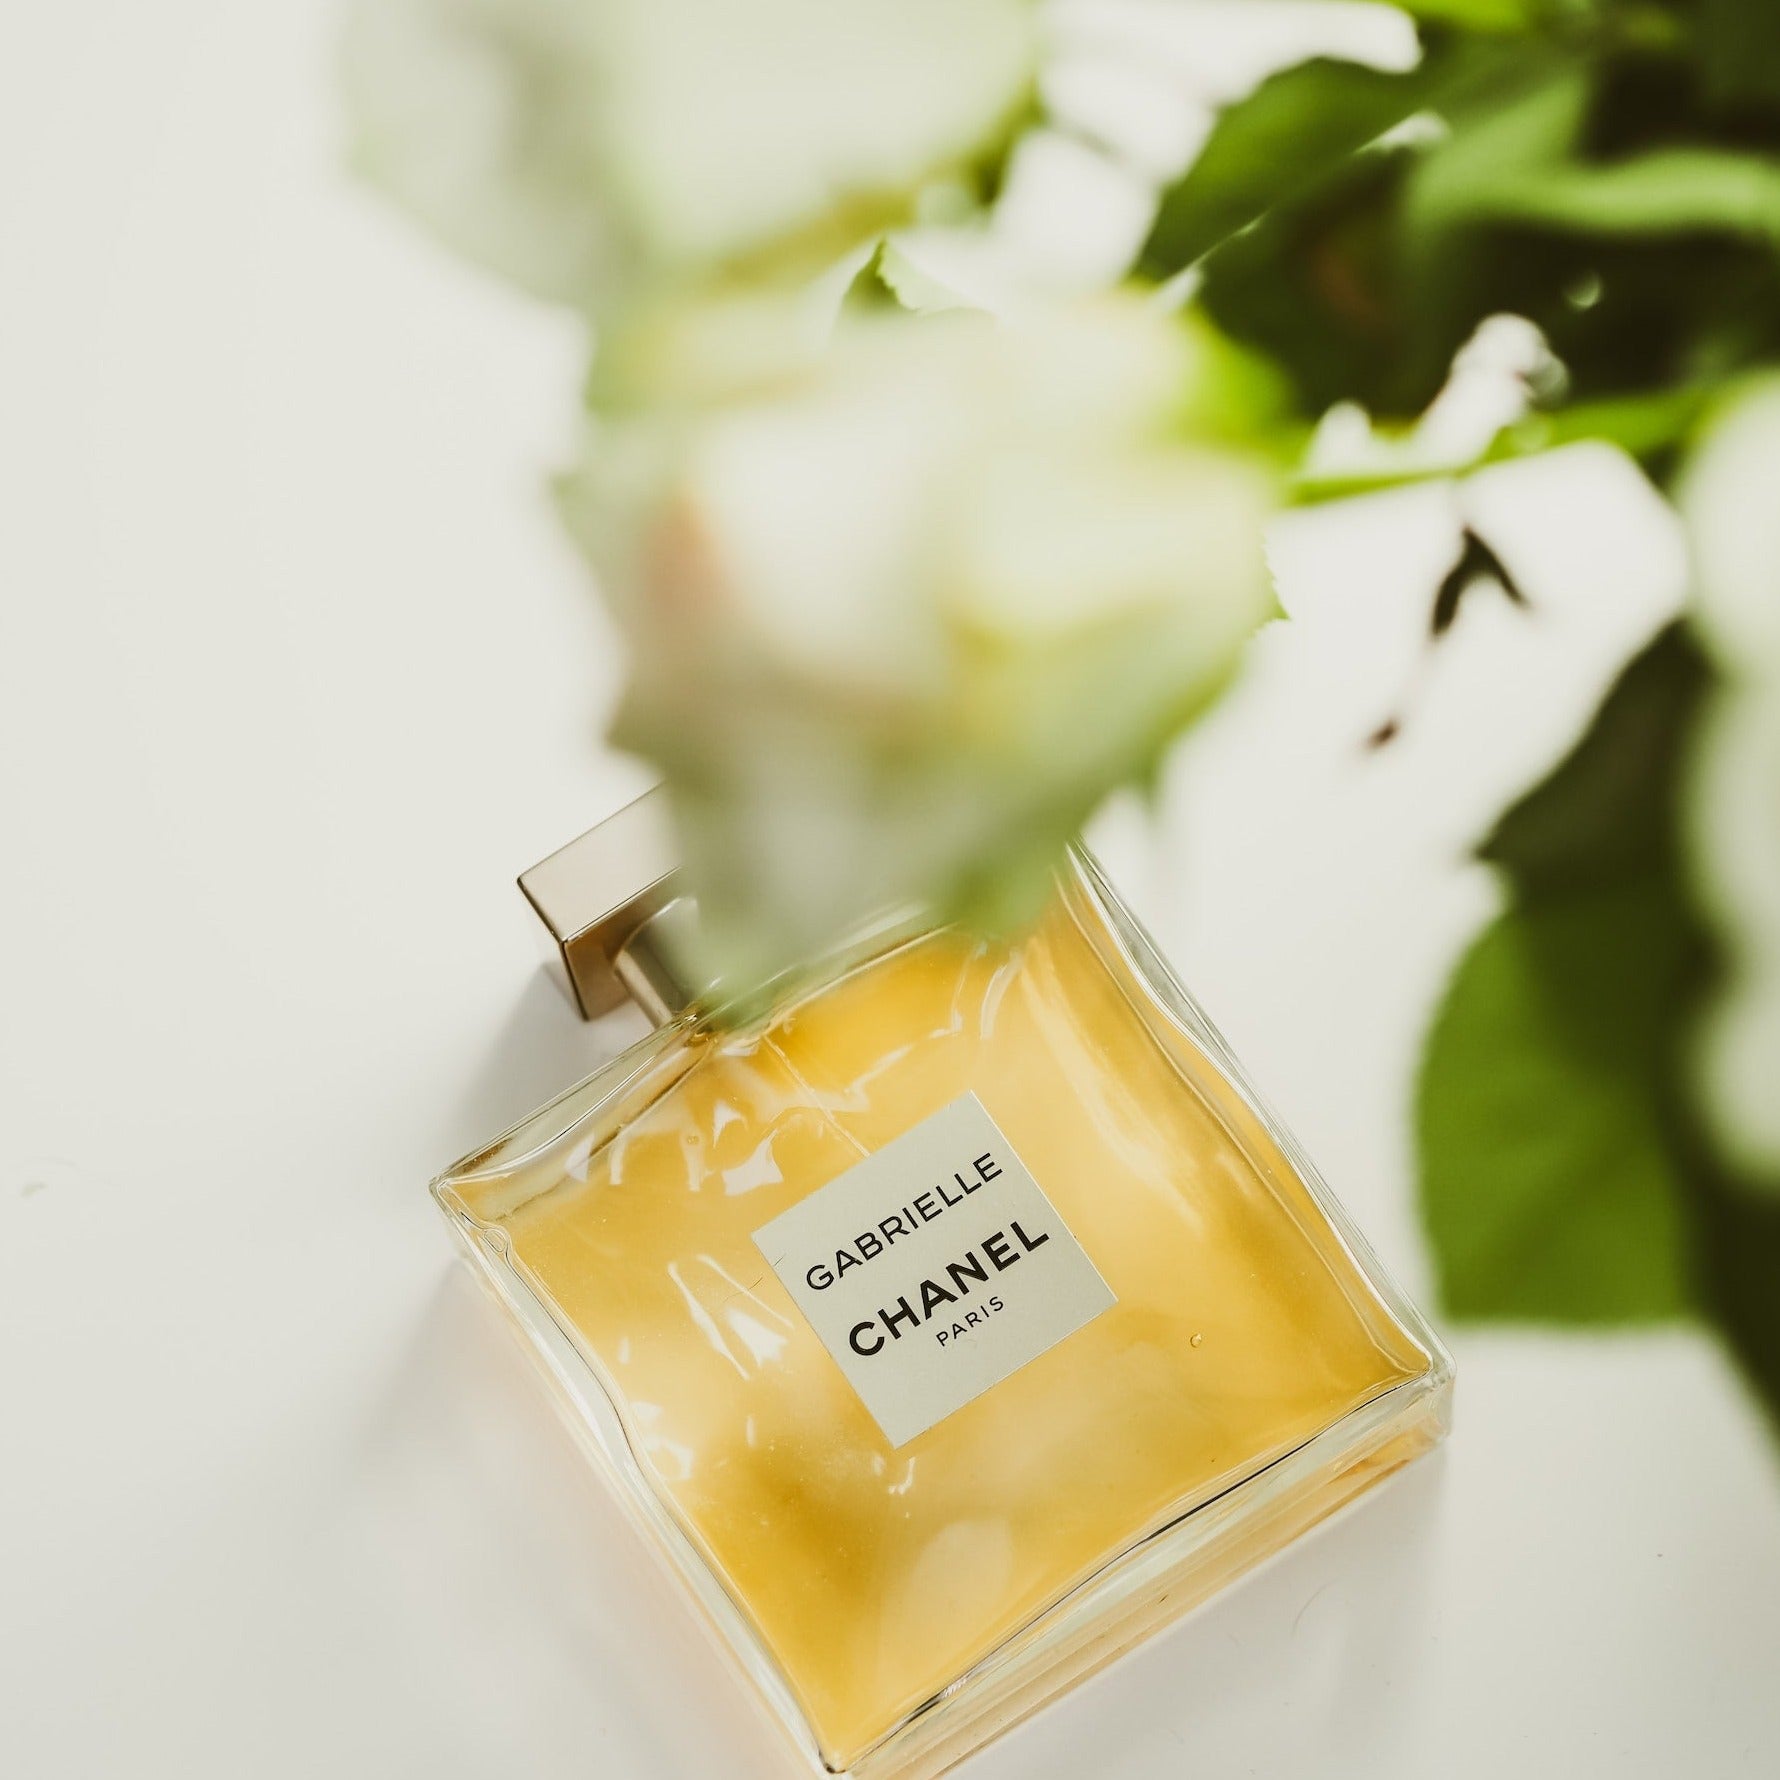 Chanel Gabrielle Parfum Hair Mist | My Perfume Shop Australia